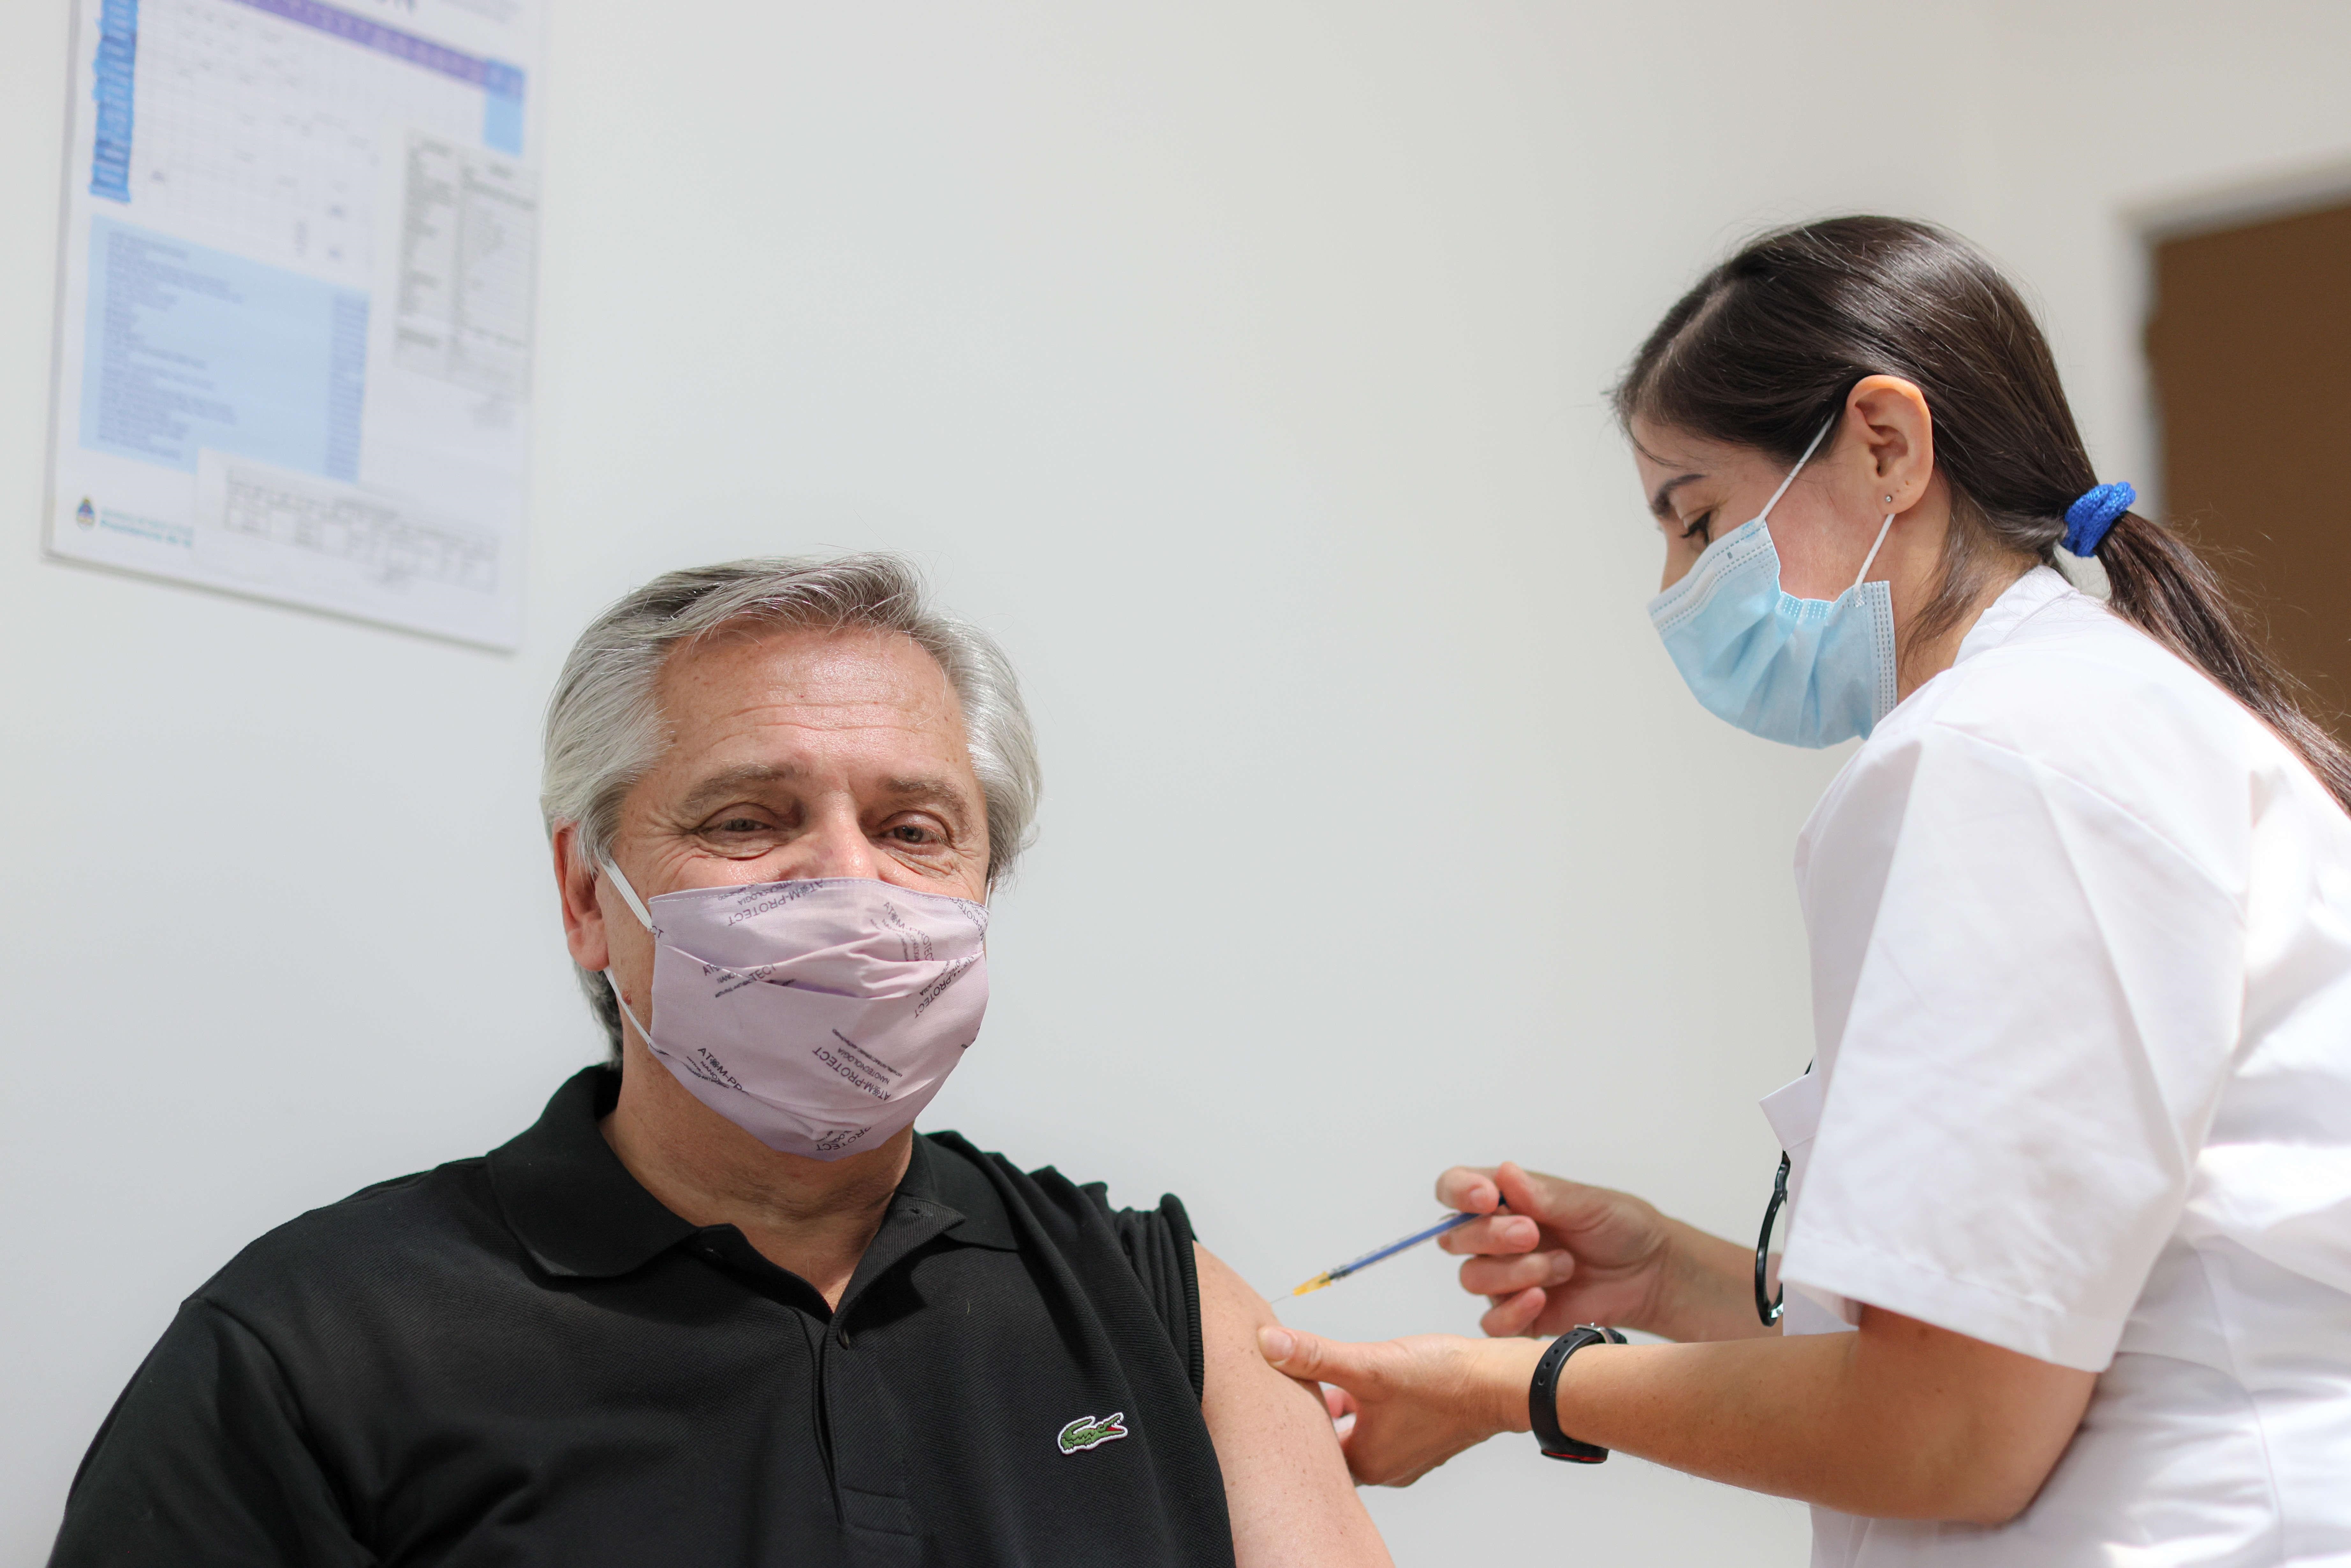 El presidente Alberto Fernández, de 61 años, se vacunó en el Hospital Posadas de El Palomar con la medicación rusa